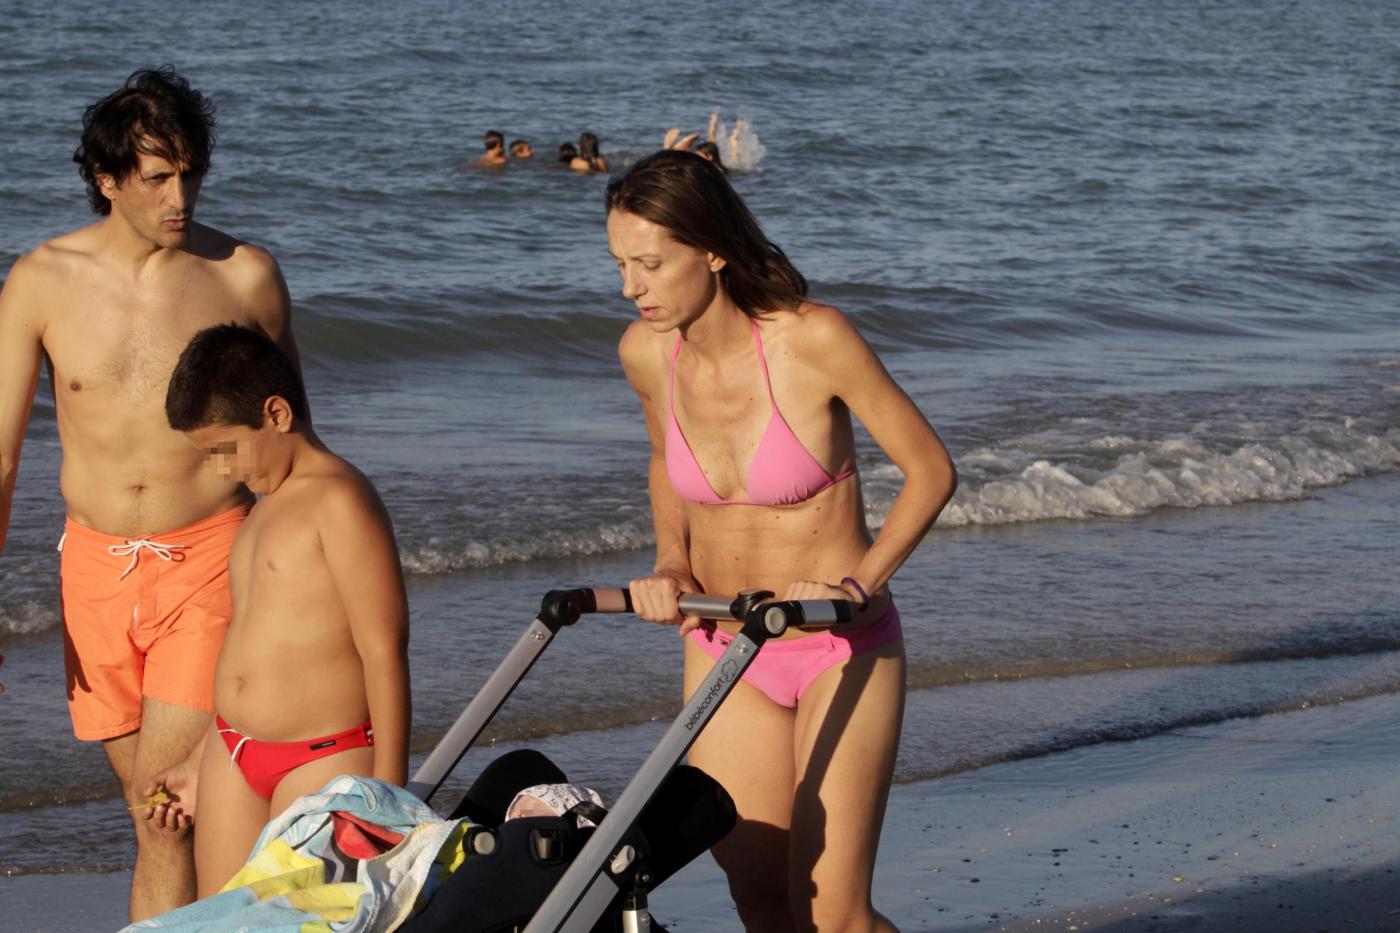 Valentina Vezzali in spiaggia a Senigallia con il marito e i figli 03